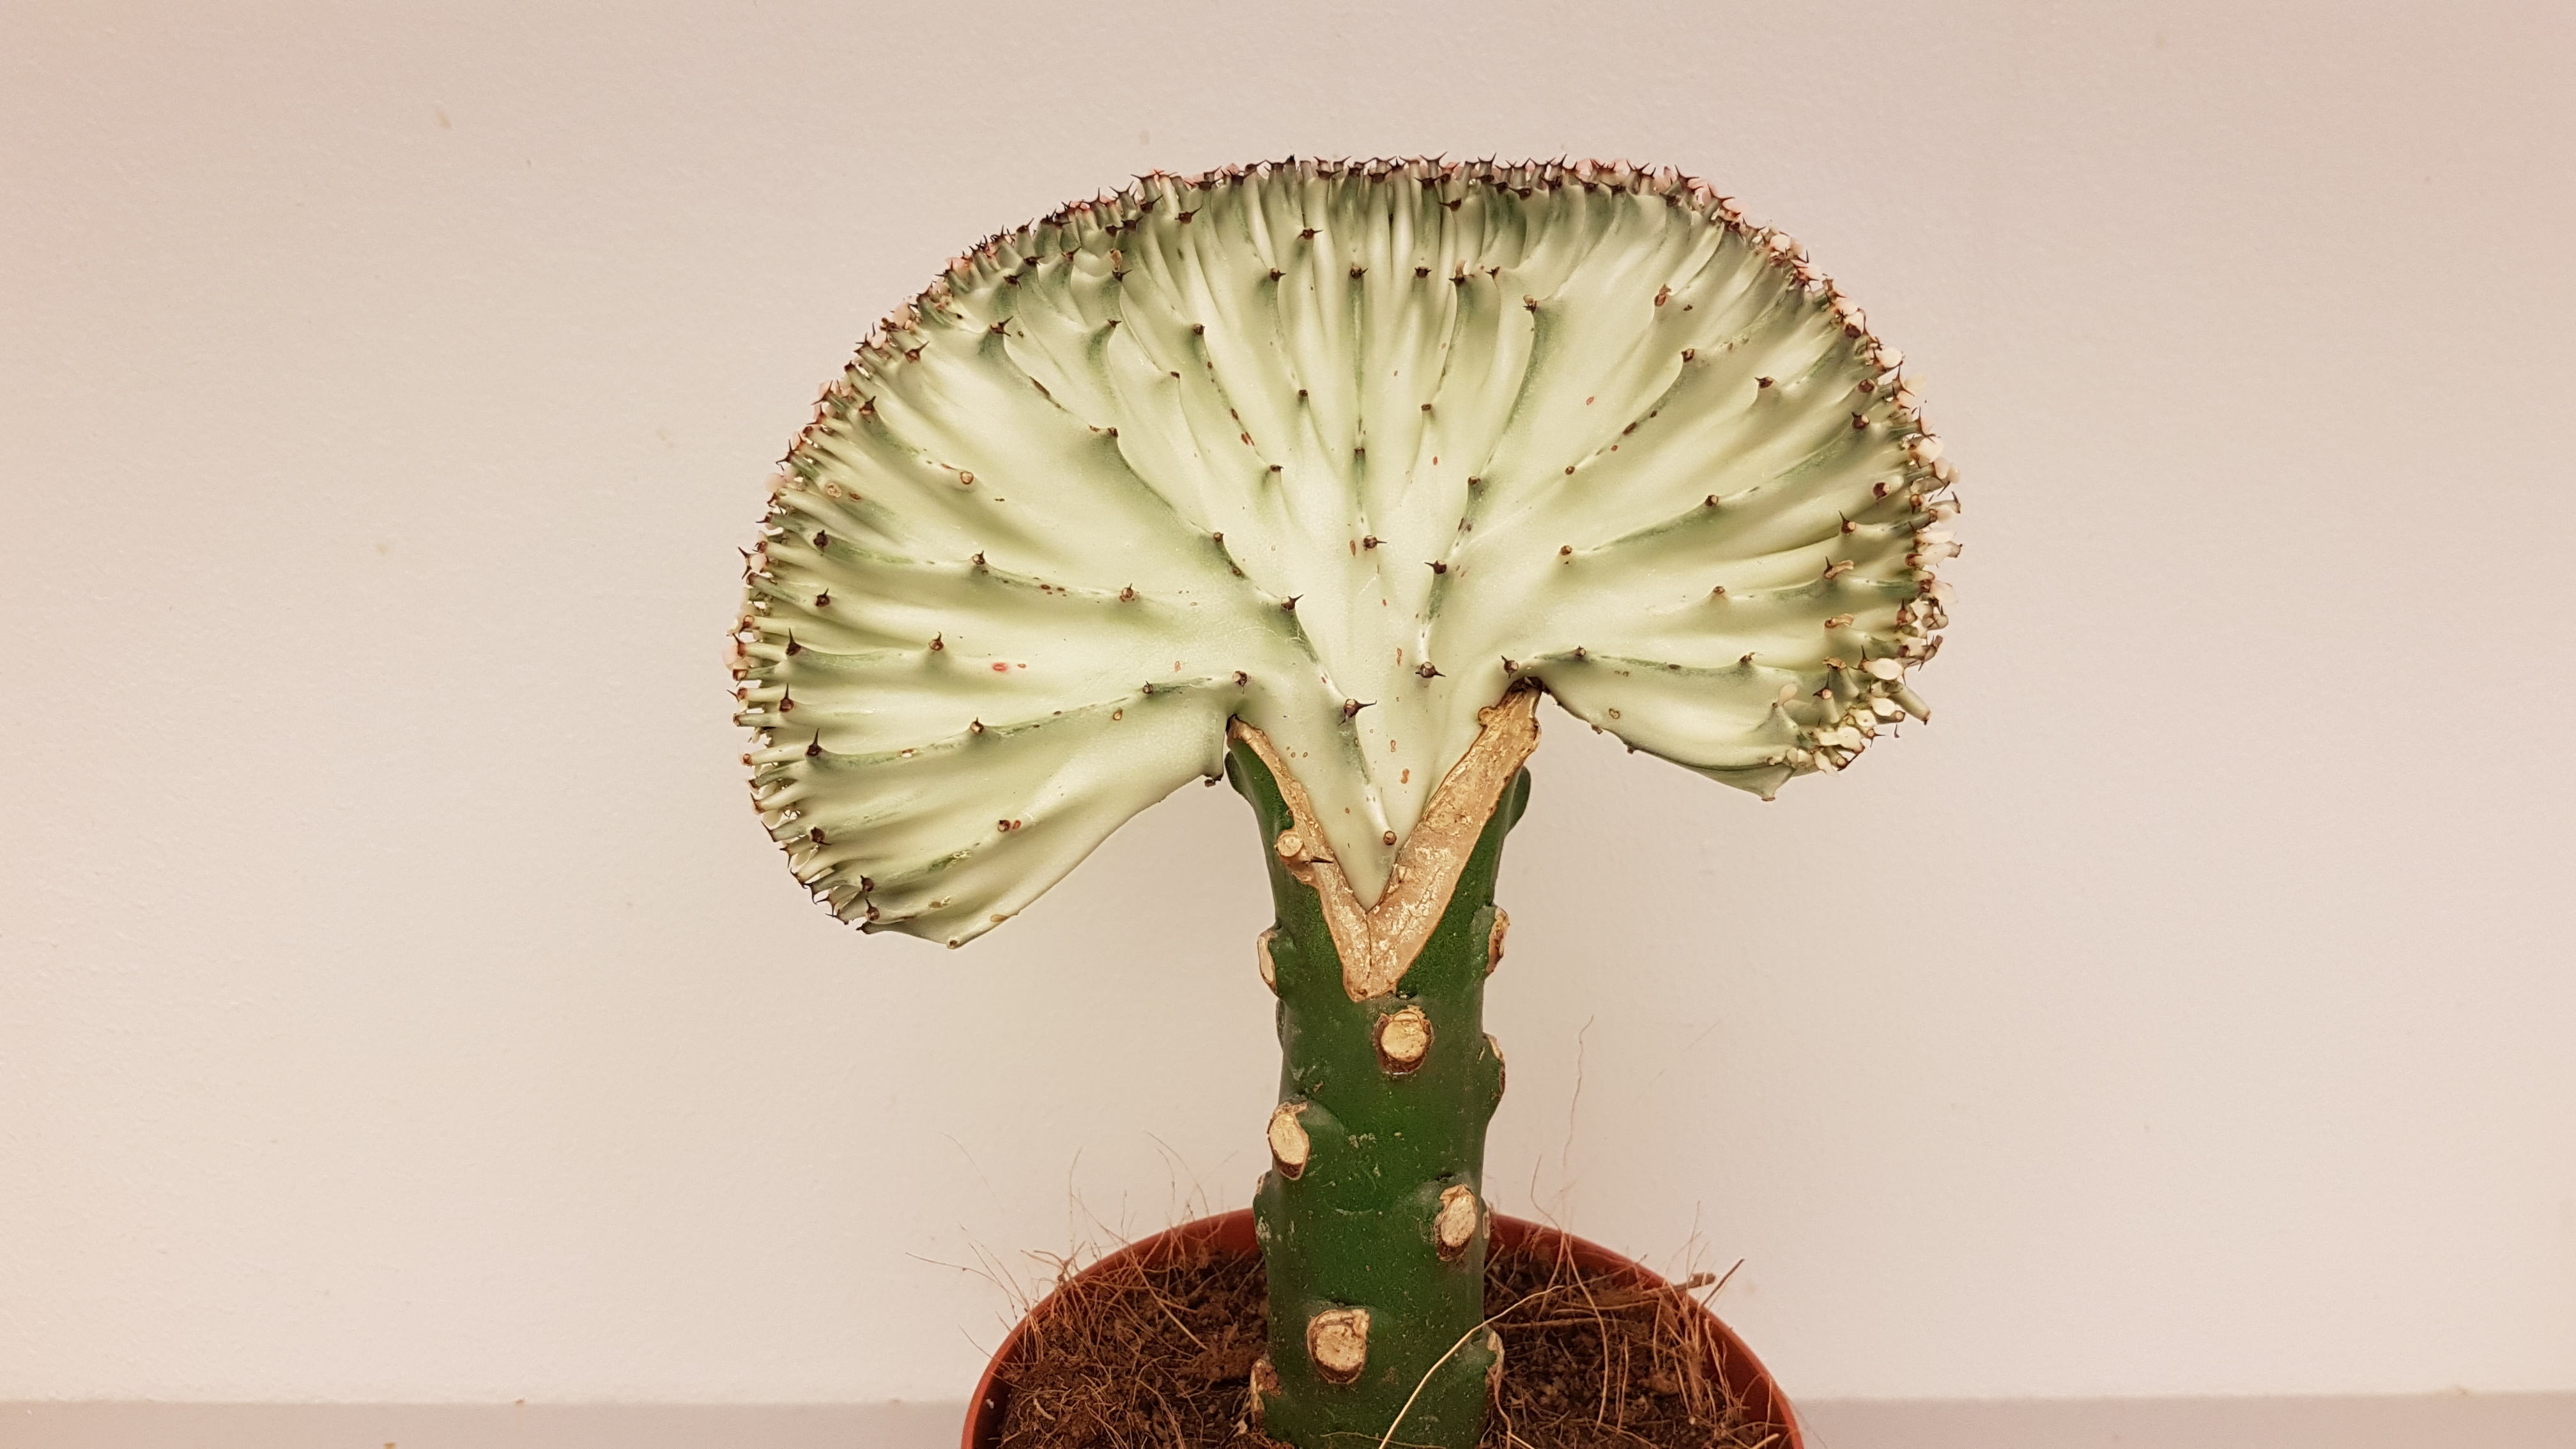 Hvit vifteformet kaktusplante som springer ut ifra grønn rot